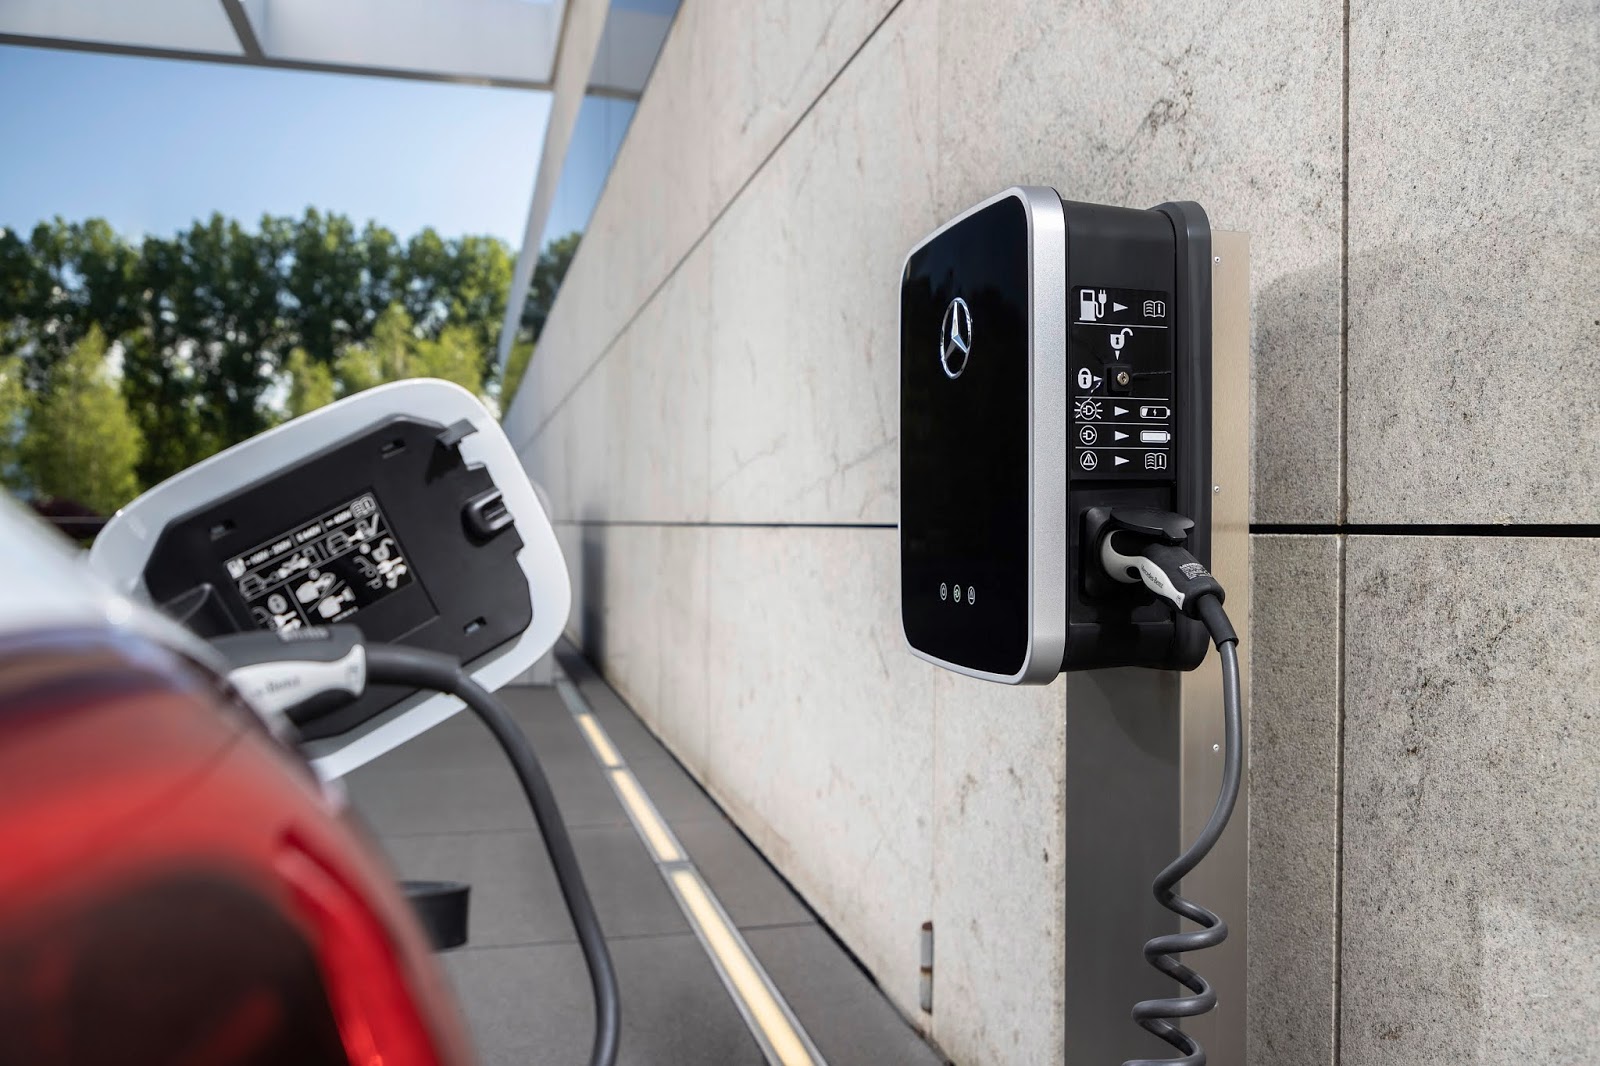 20C0351 001 Mercedes EQ Power : Τα Plug-in hybrid προσφέρουν τα οφέλη της ηλεκτροκίνησης, στις καθημερινές μετακινήσεις